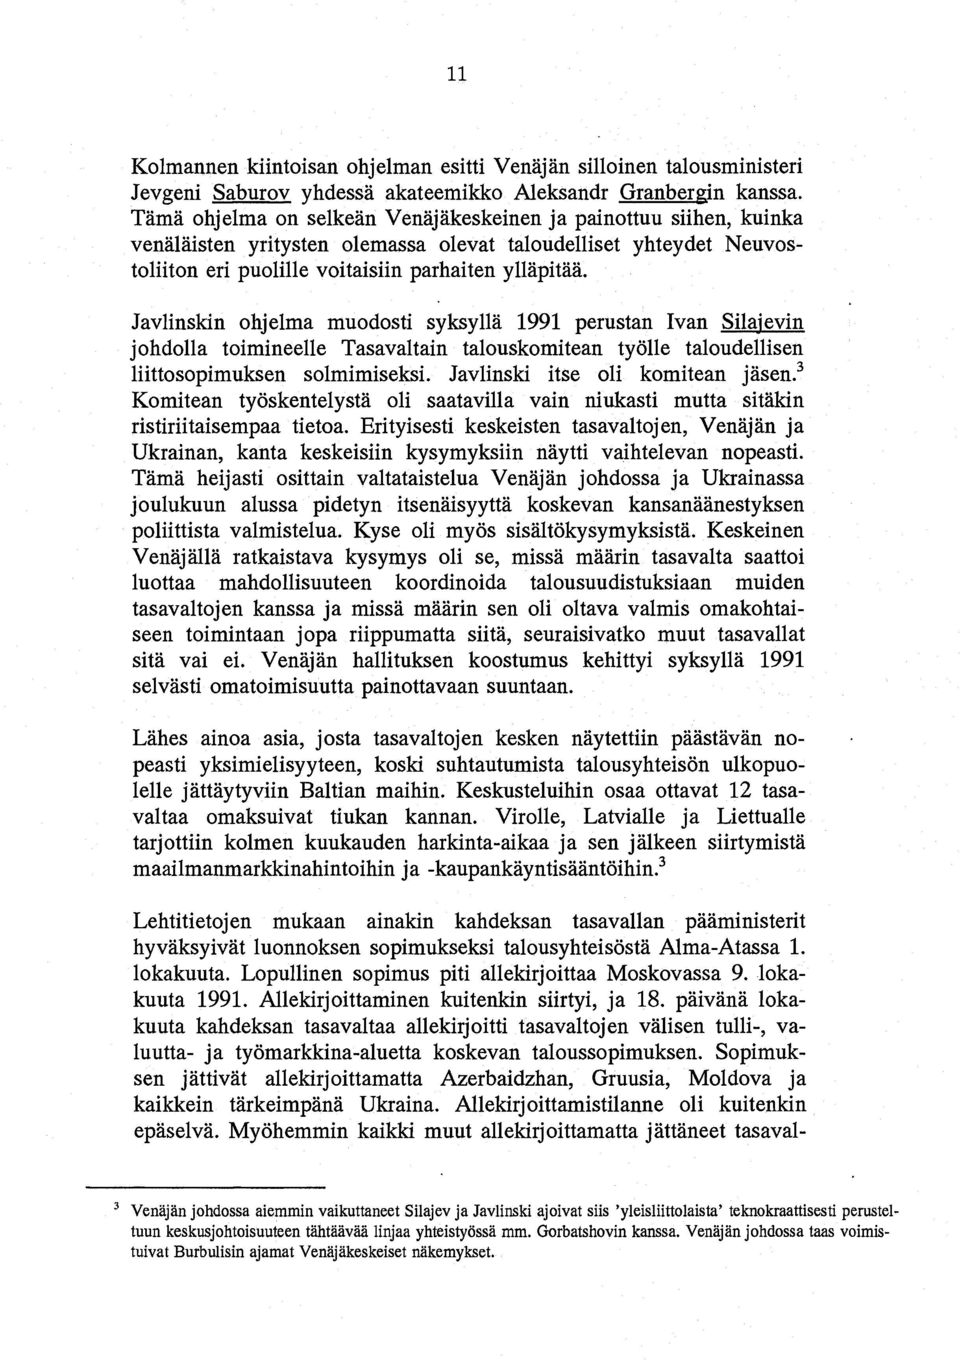 Javlinskin ohjelma muodosti syksylla 1991 perustan Ivan Silajevin johdolla toimineelle Tasavaltain talouskomitean tyolle taloudellisen liittosopimuksen solmimiseksl Javlinski itse oli komitean jasen.